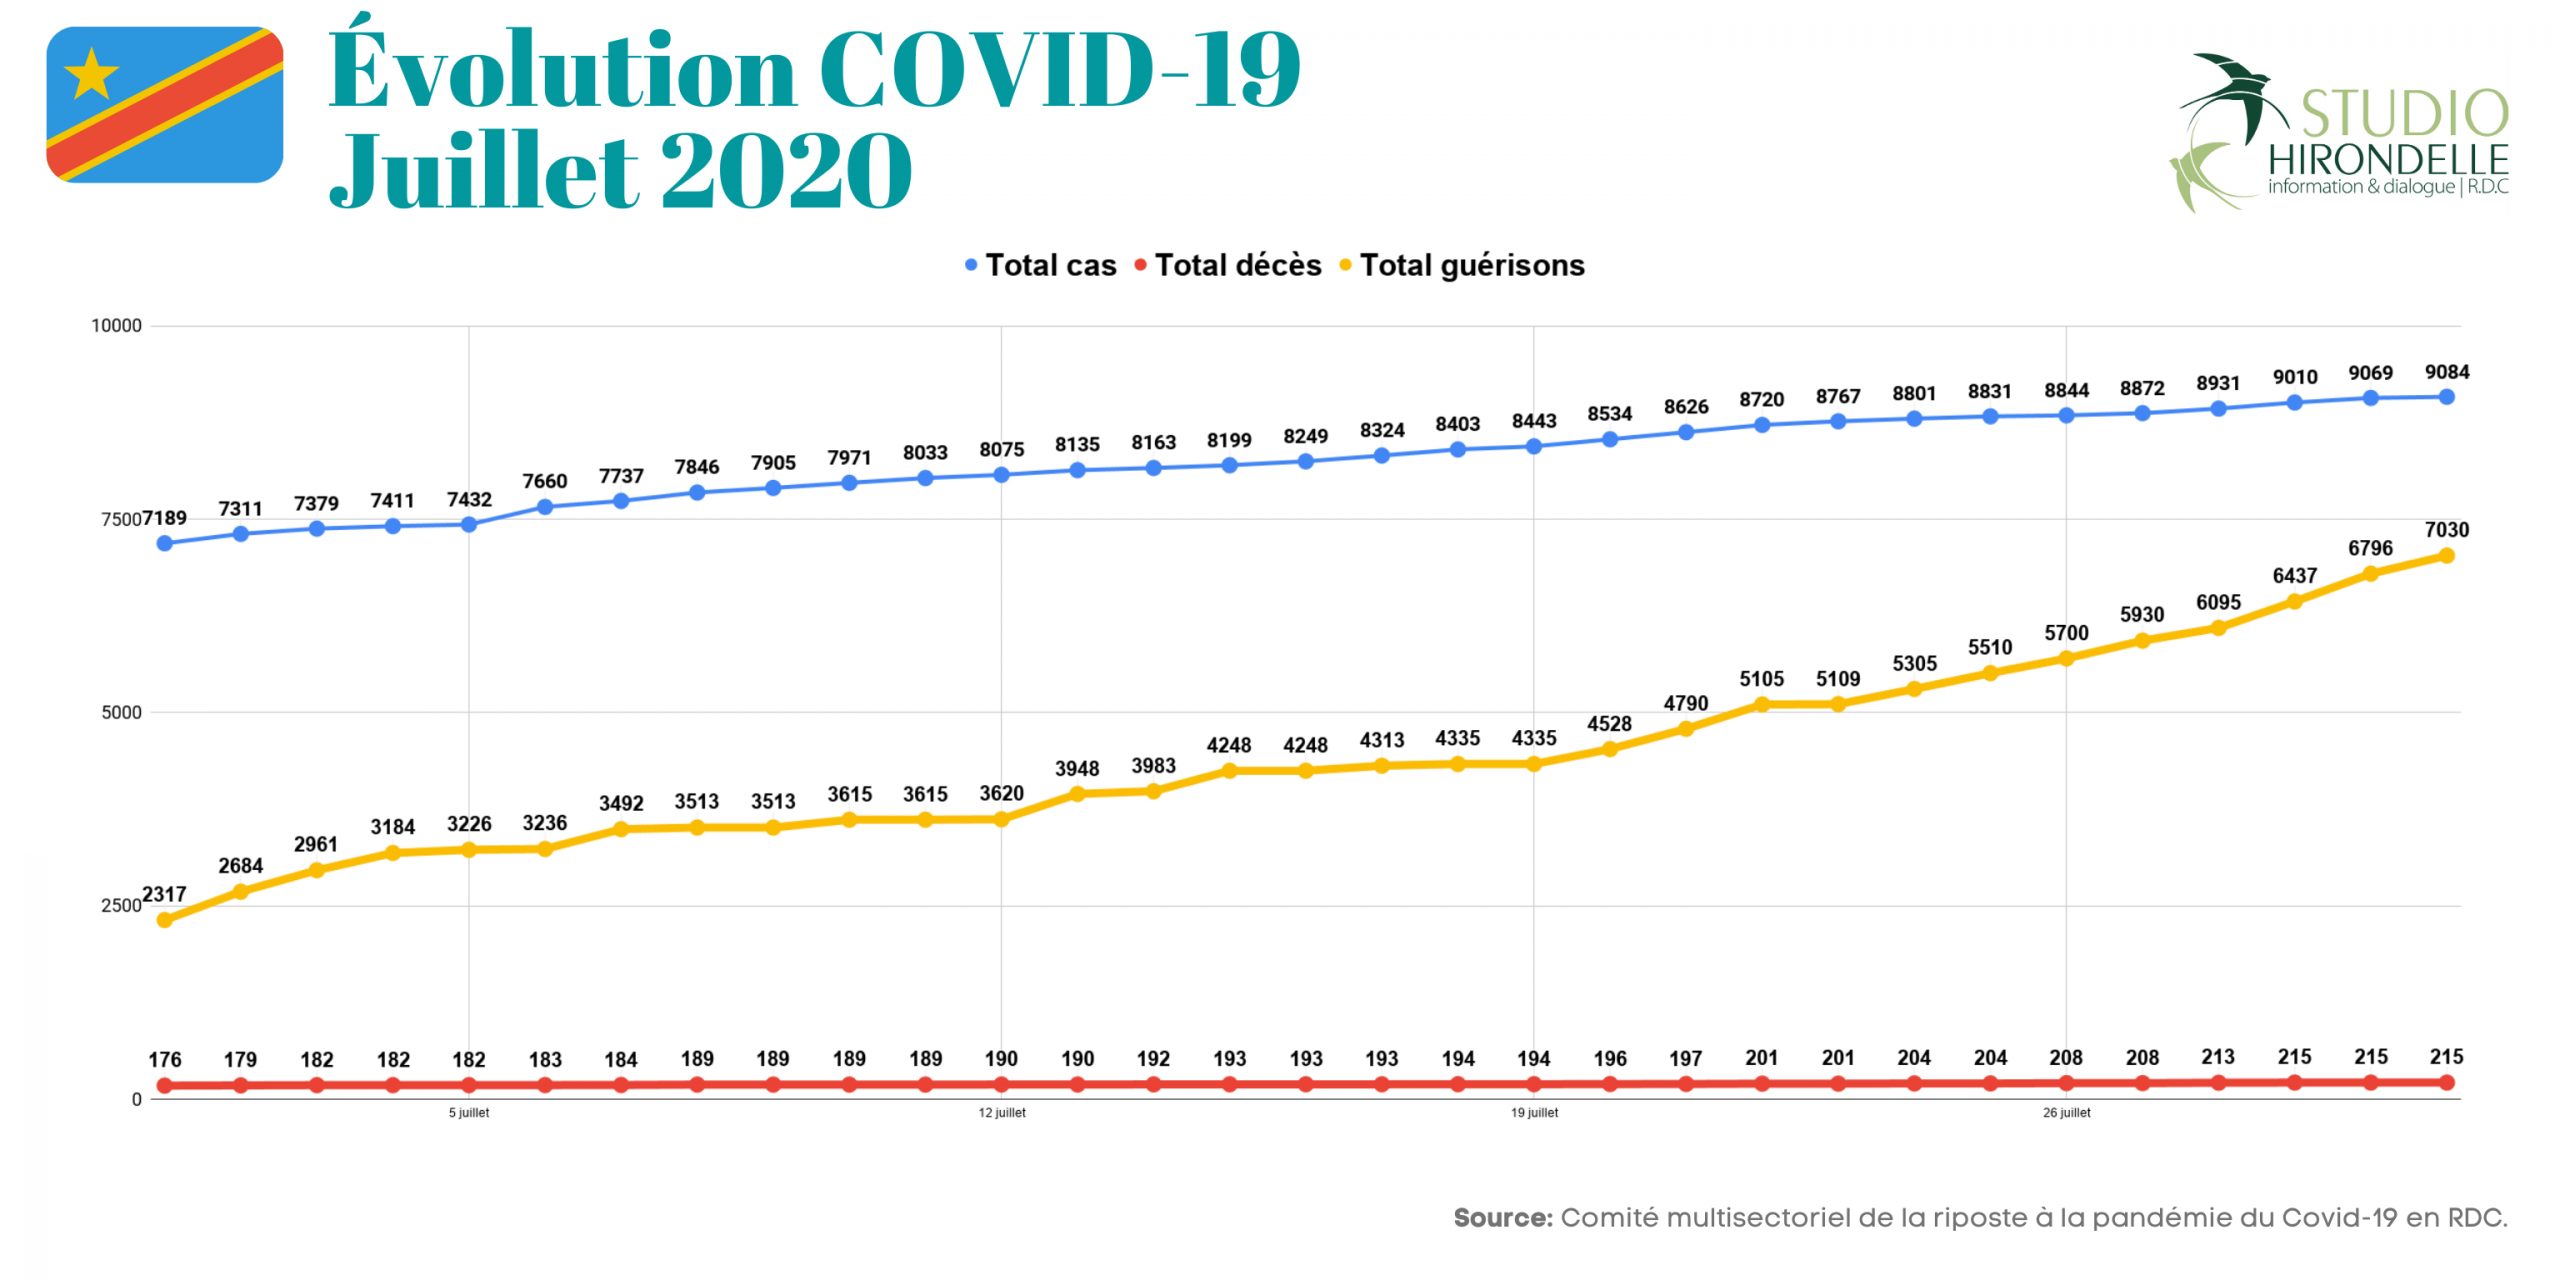 COVID-19 en RDC : Résumé de chiffres du mois de Juillet